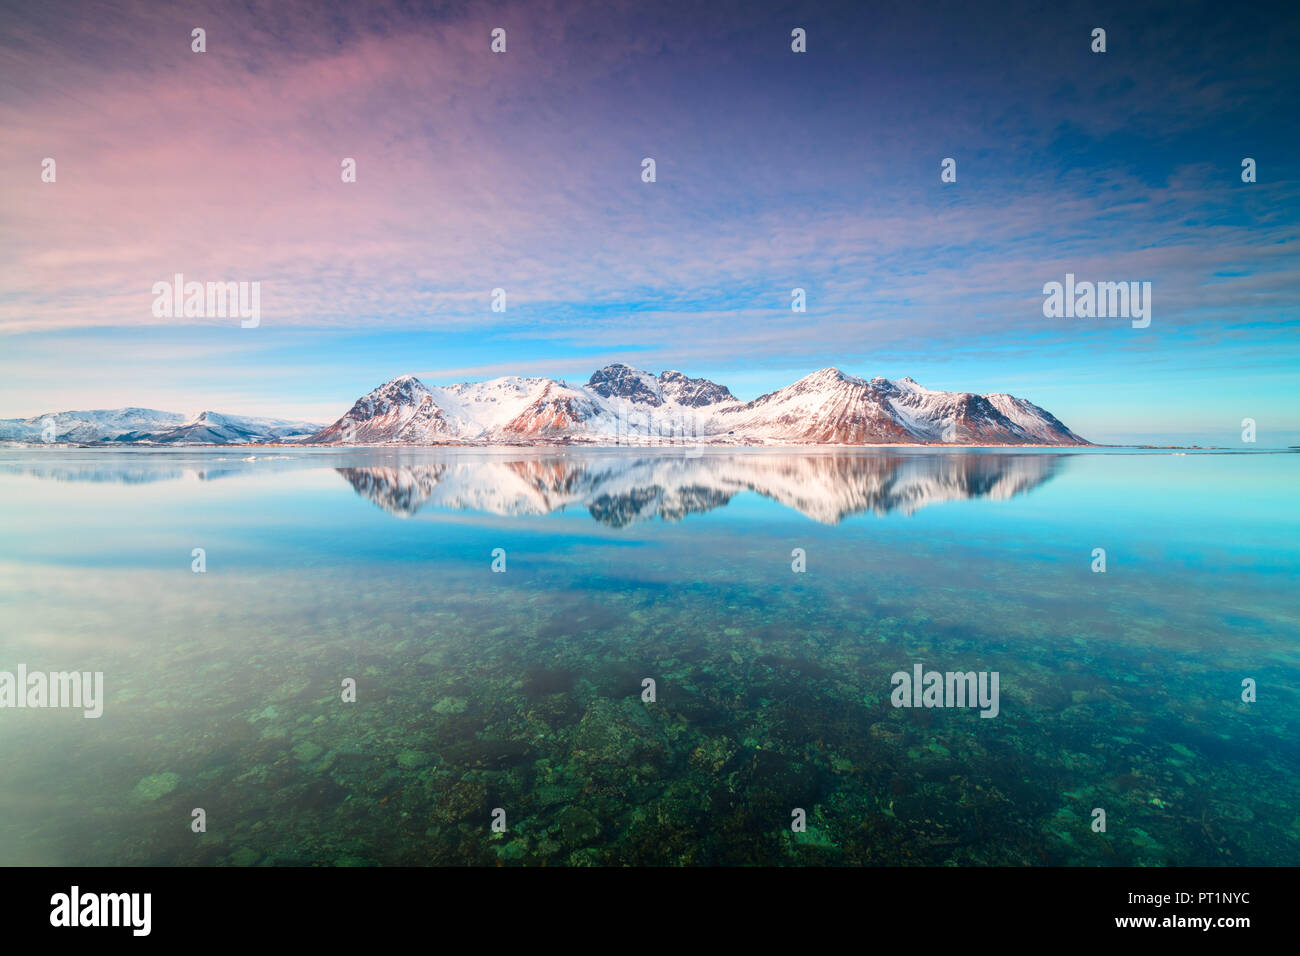 Vette innevate si riflette nel mare cristallino, Grundstad, Isole Lofoten in Norvegia Foto Stock